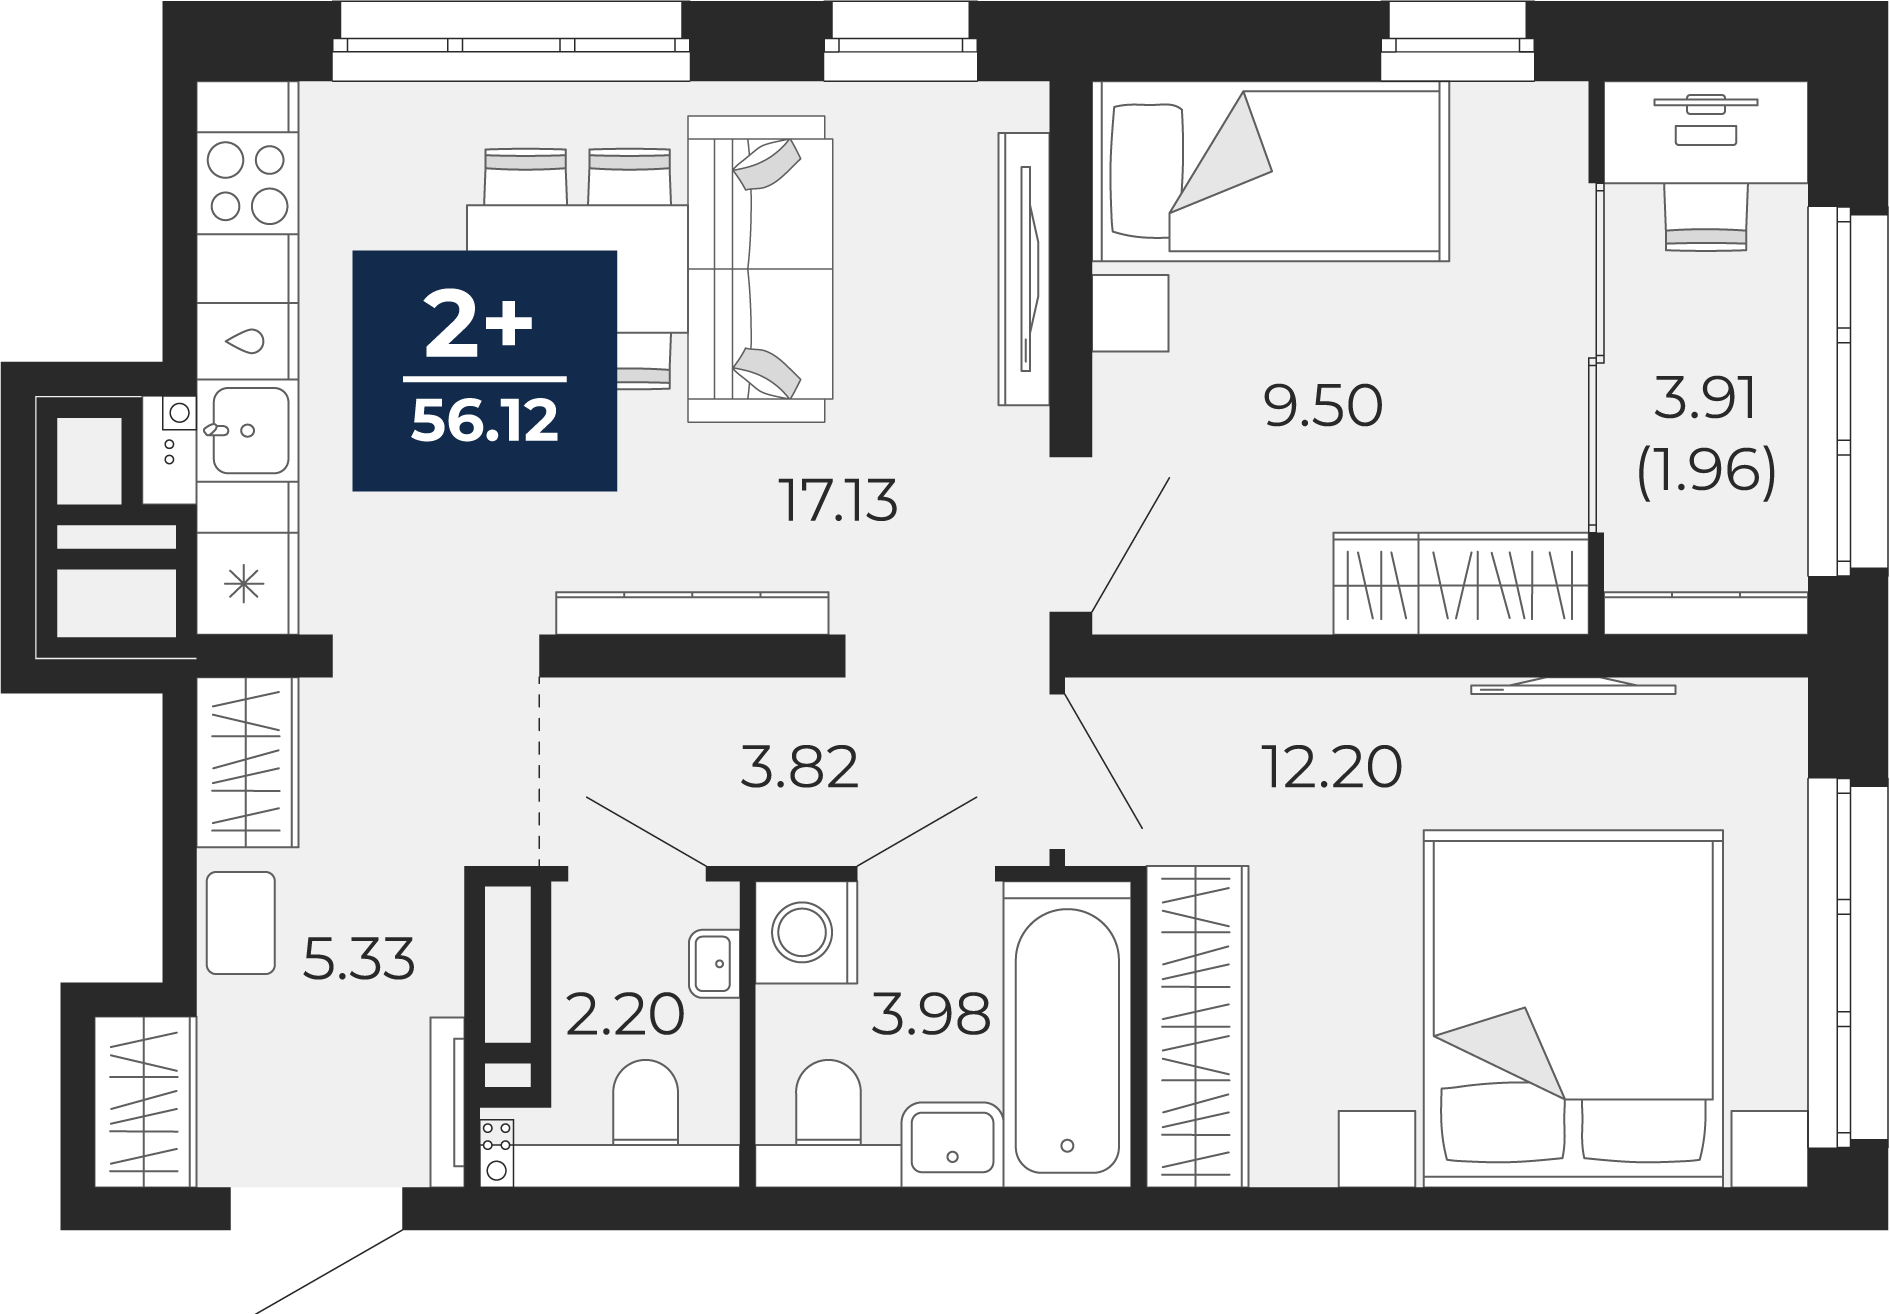 Квартира № 84, 2-комнатная, 56.12 кв. м, 4 этаж